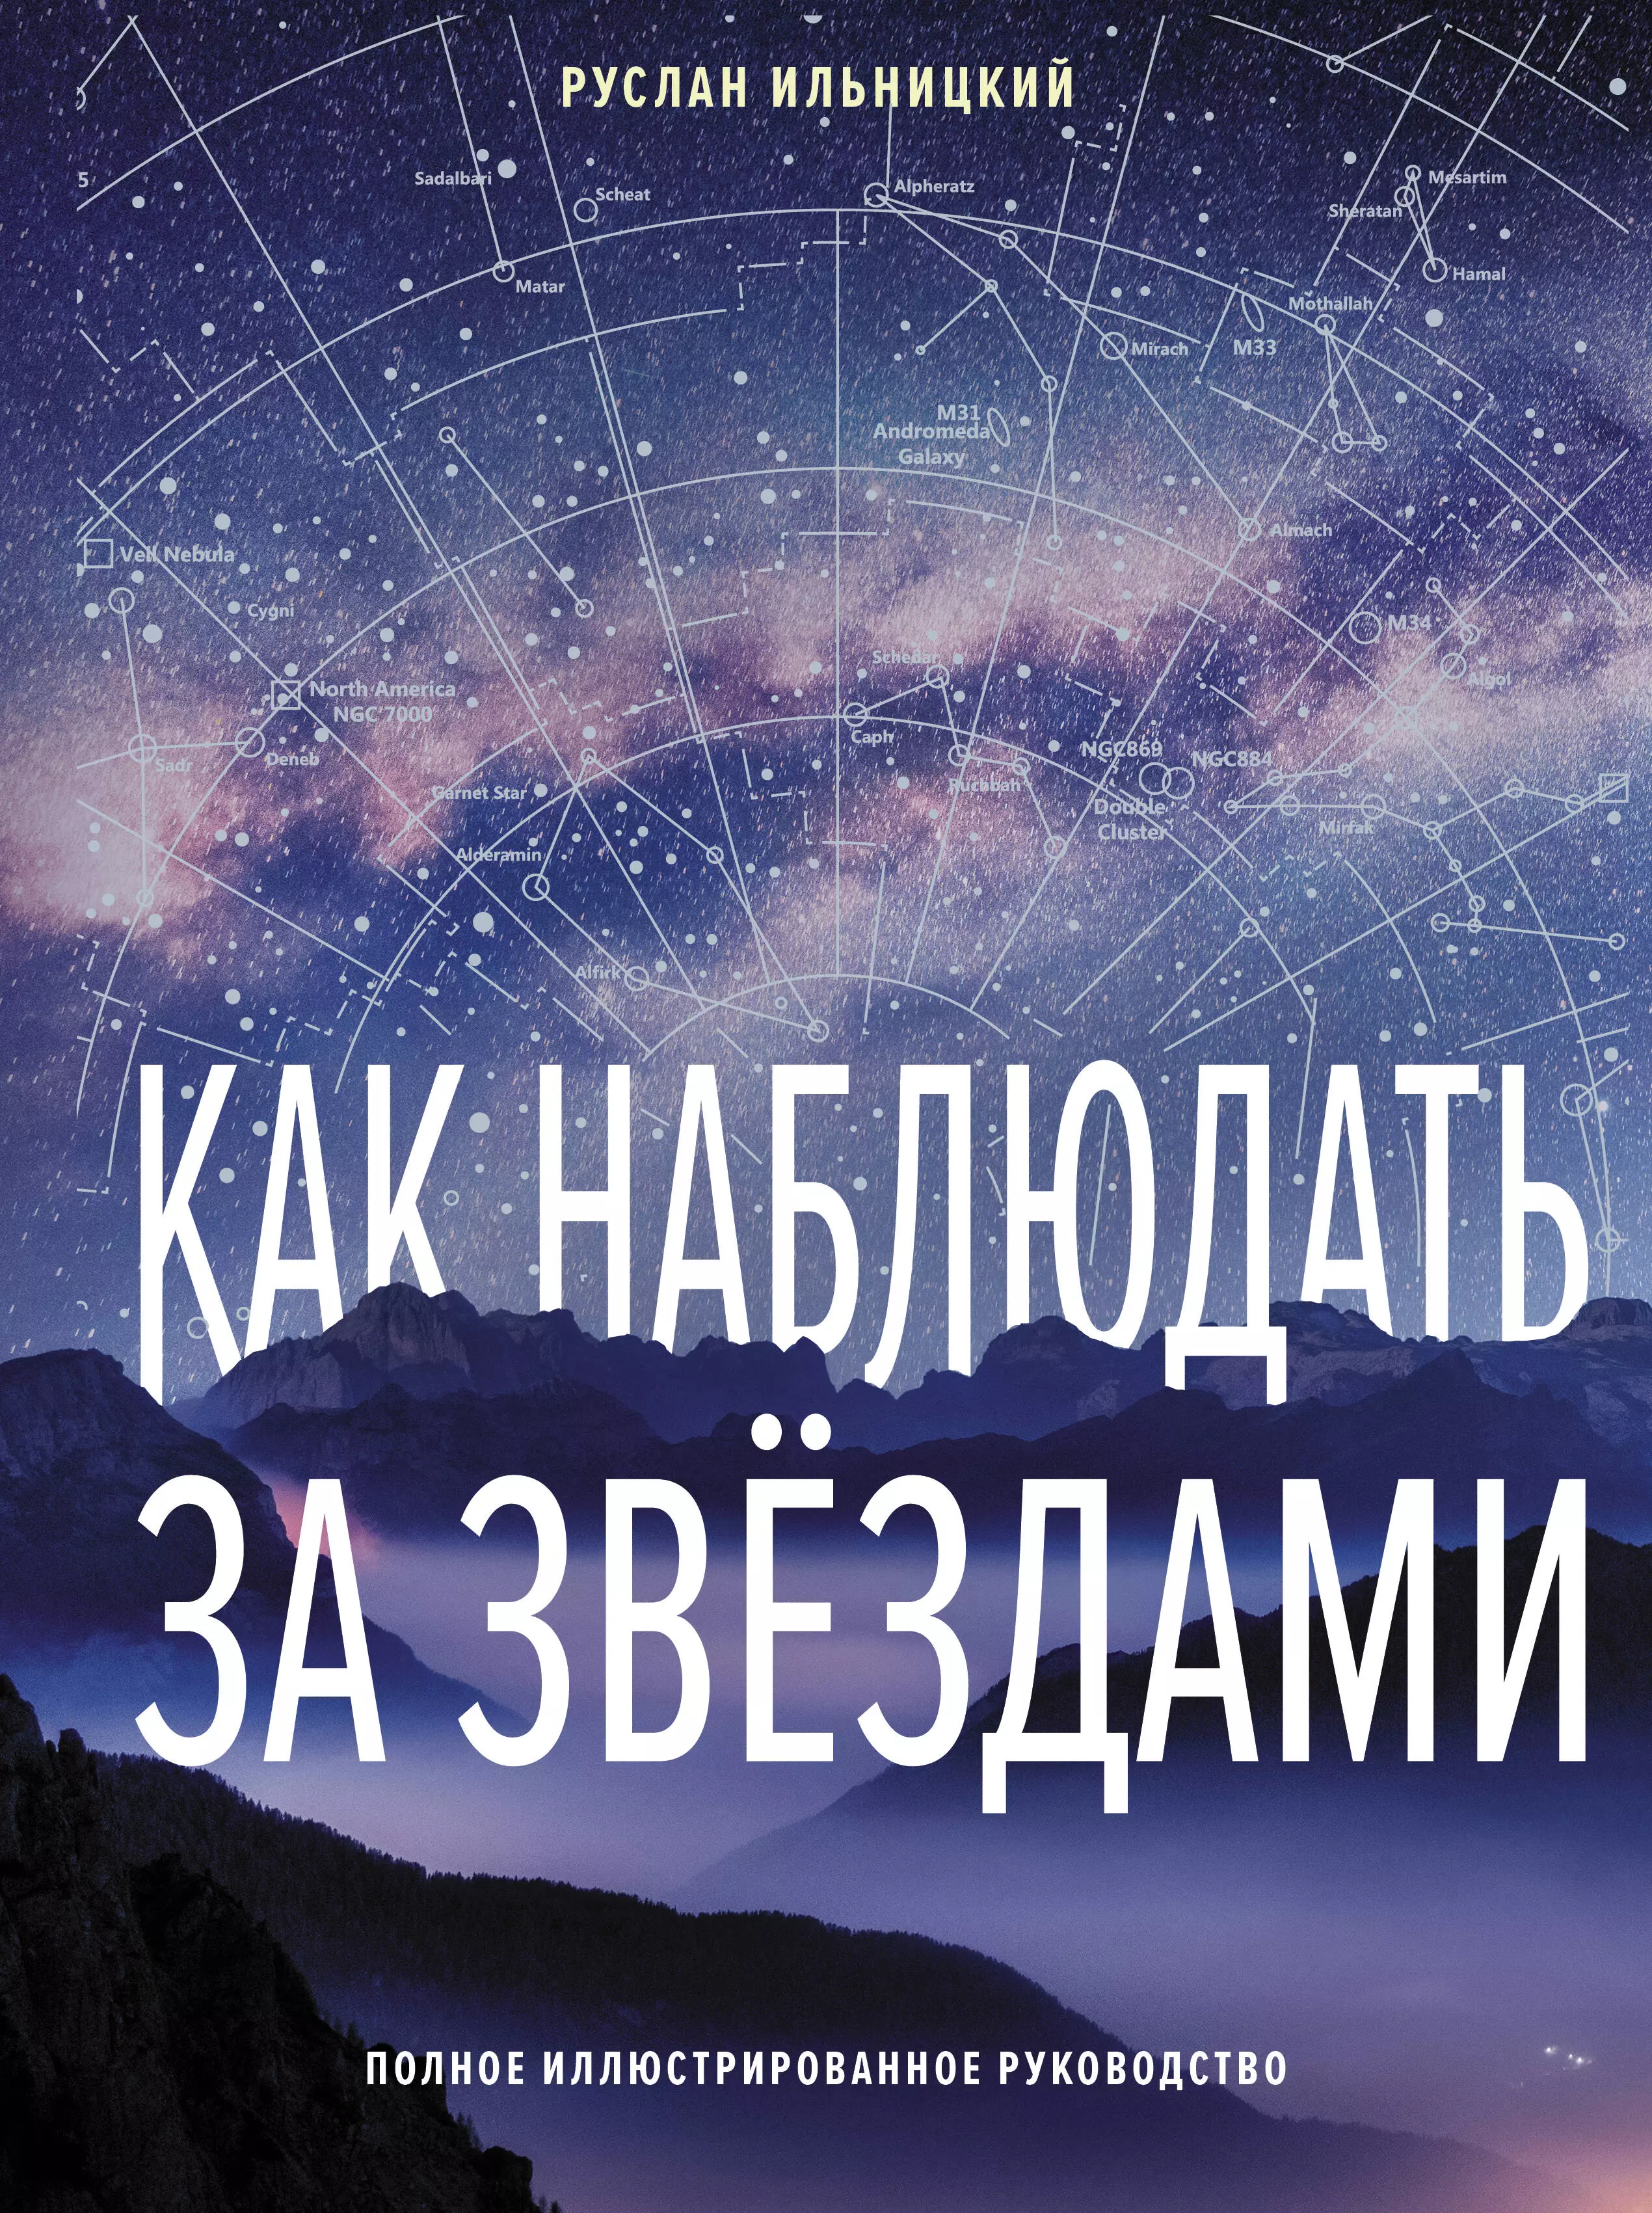 Ильницкий Руслан Владимирович Как наблюдать за звёздами. Полное иллюстрированное руководство